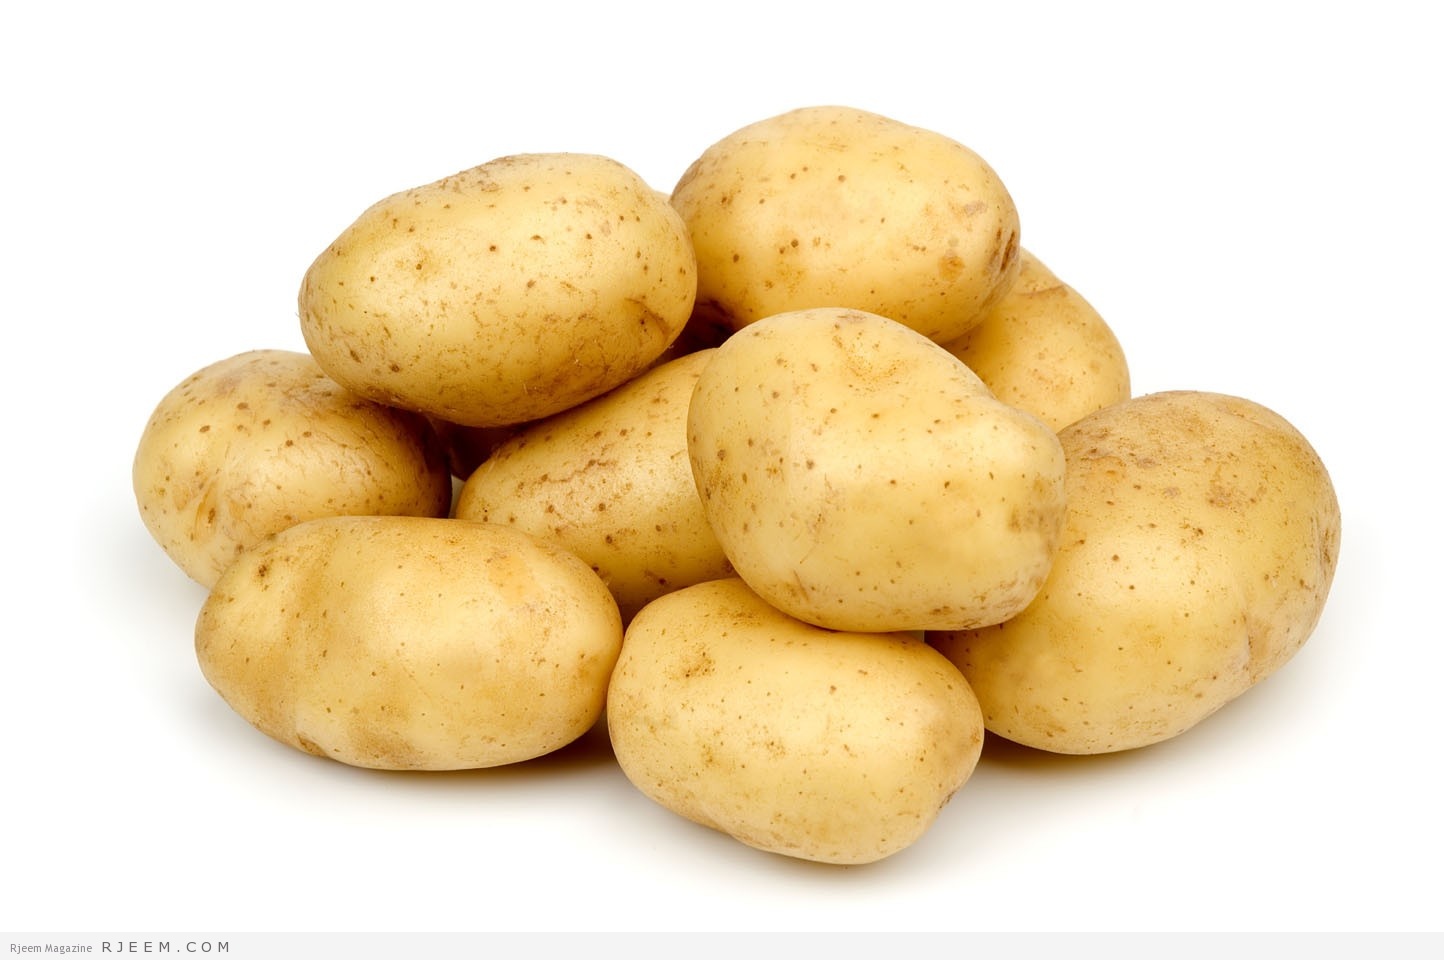 البطاطا - اهمية البطاطا الغذائية - مجلة رجيم